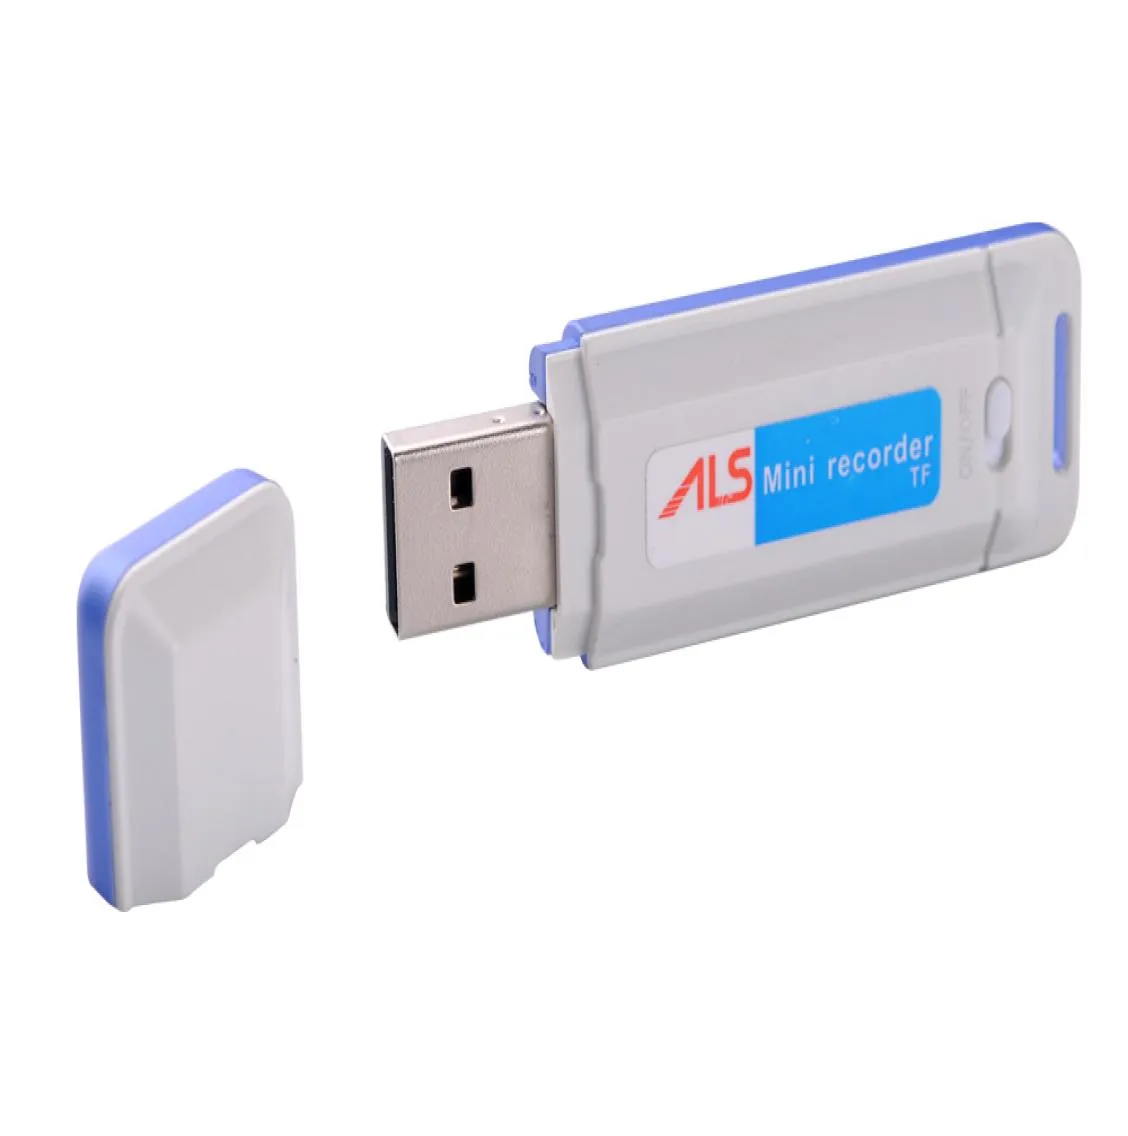 USB-диск мини-аудио-диктофон K1 USB-накопитель с поддержкой диктофона и ручки до 32 ГБ, черный, белый, в розничной упаковке, дропшиппингpi3404045